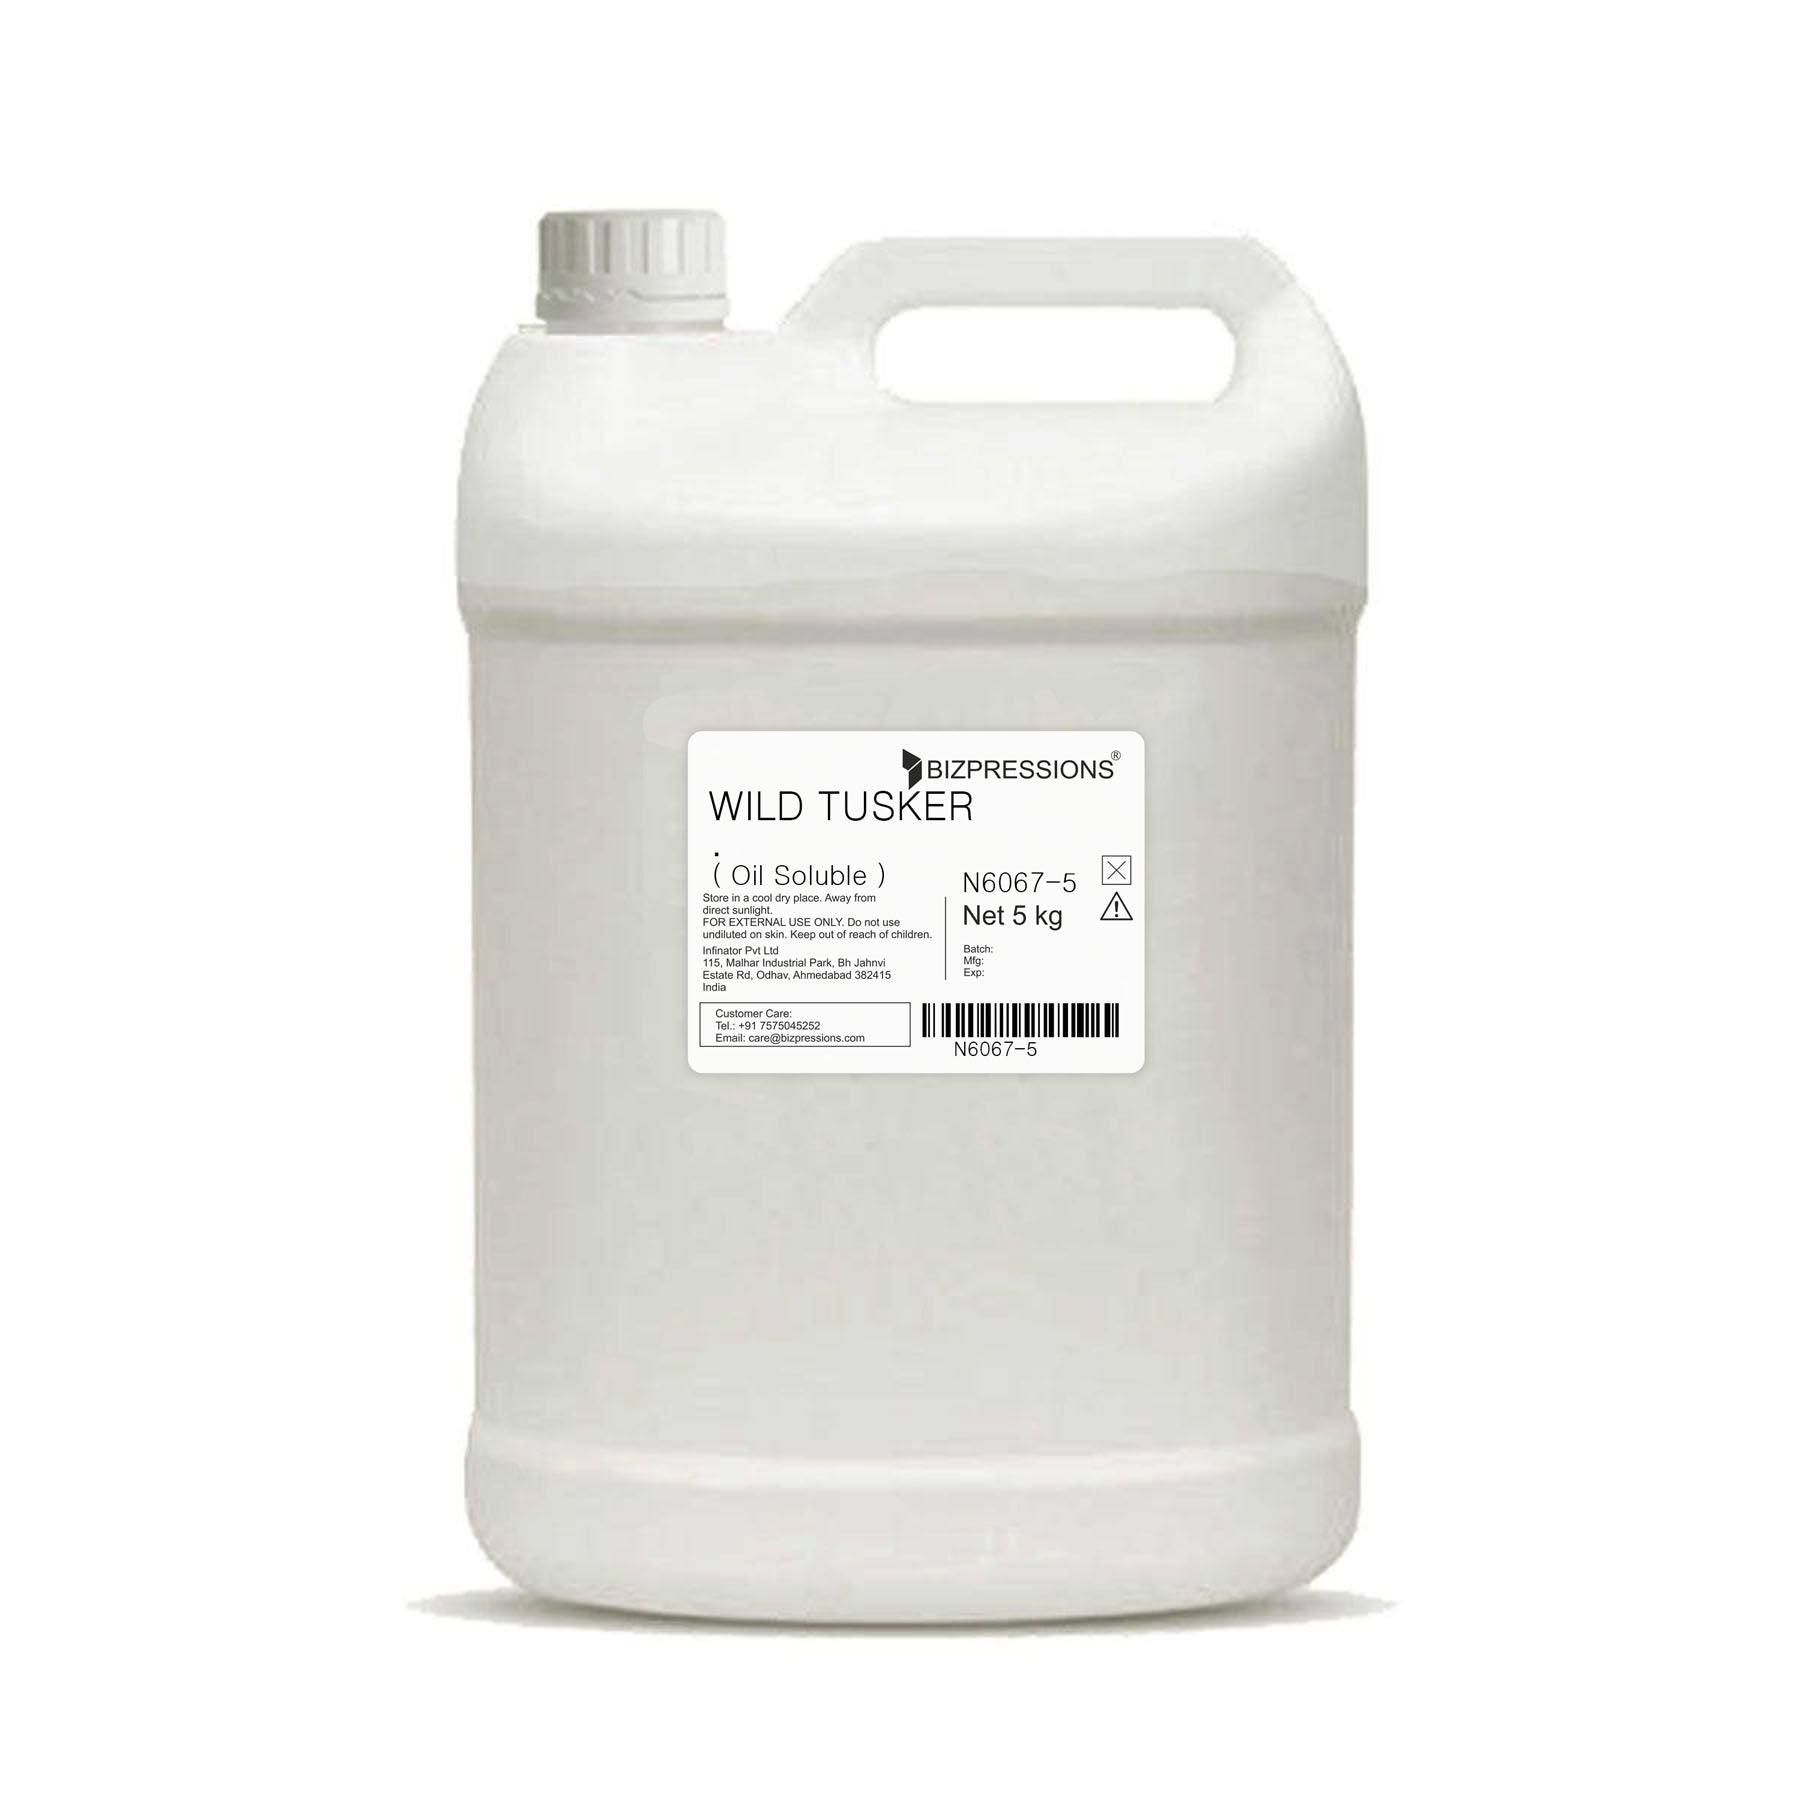 WILD TUSKER - Fragrance ( Oil Soluble ) - 5 kg